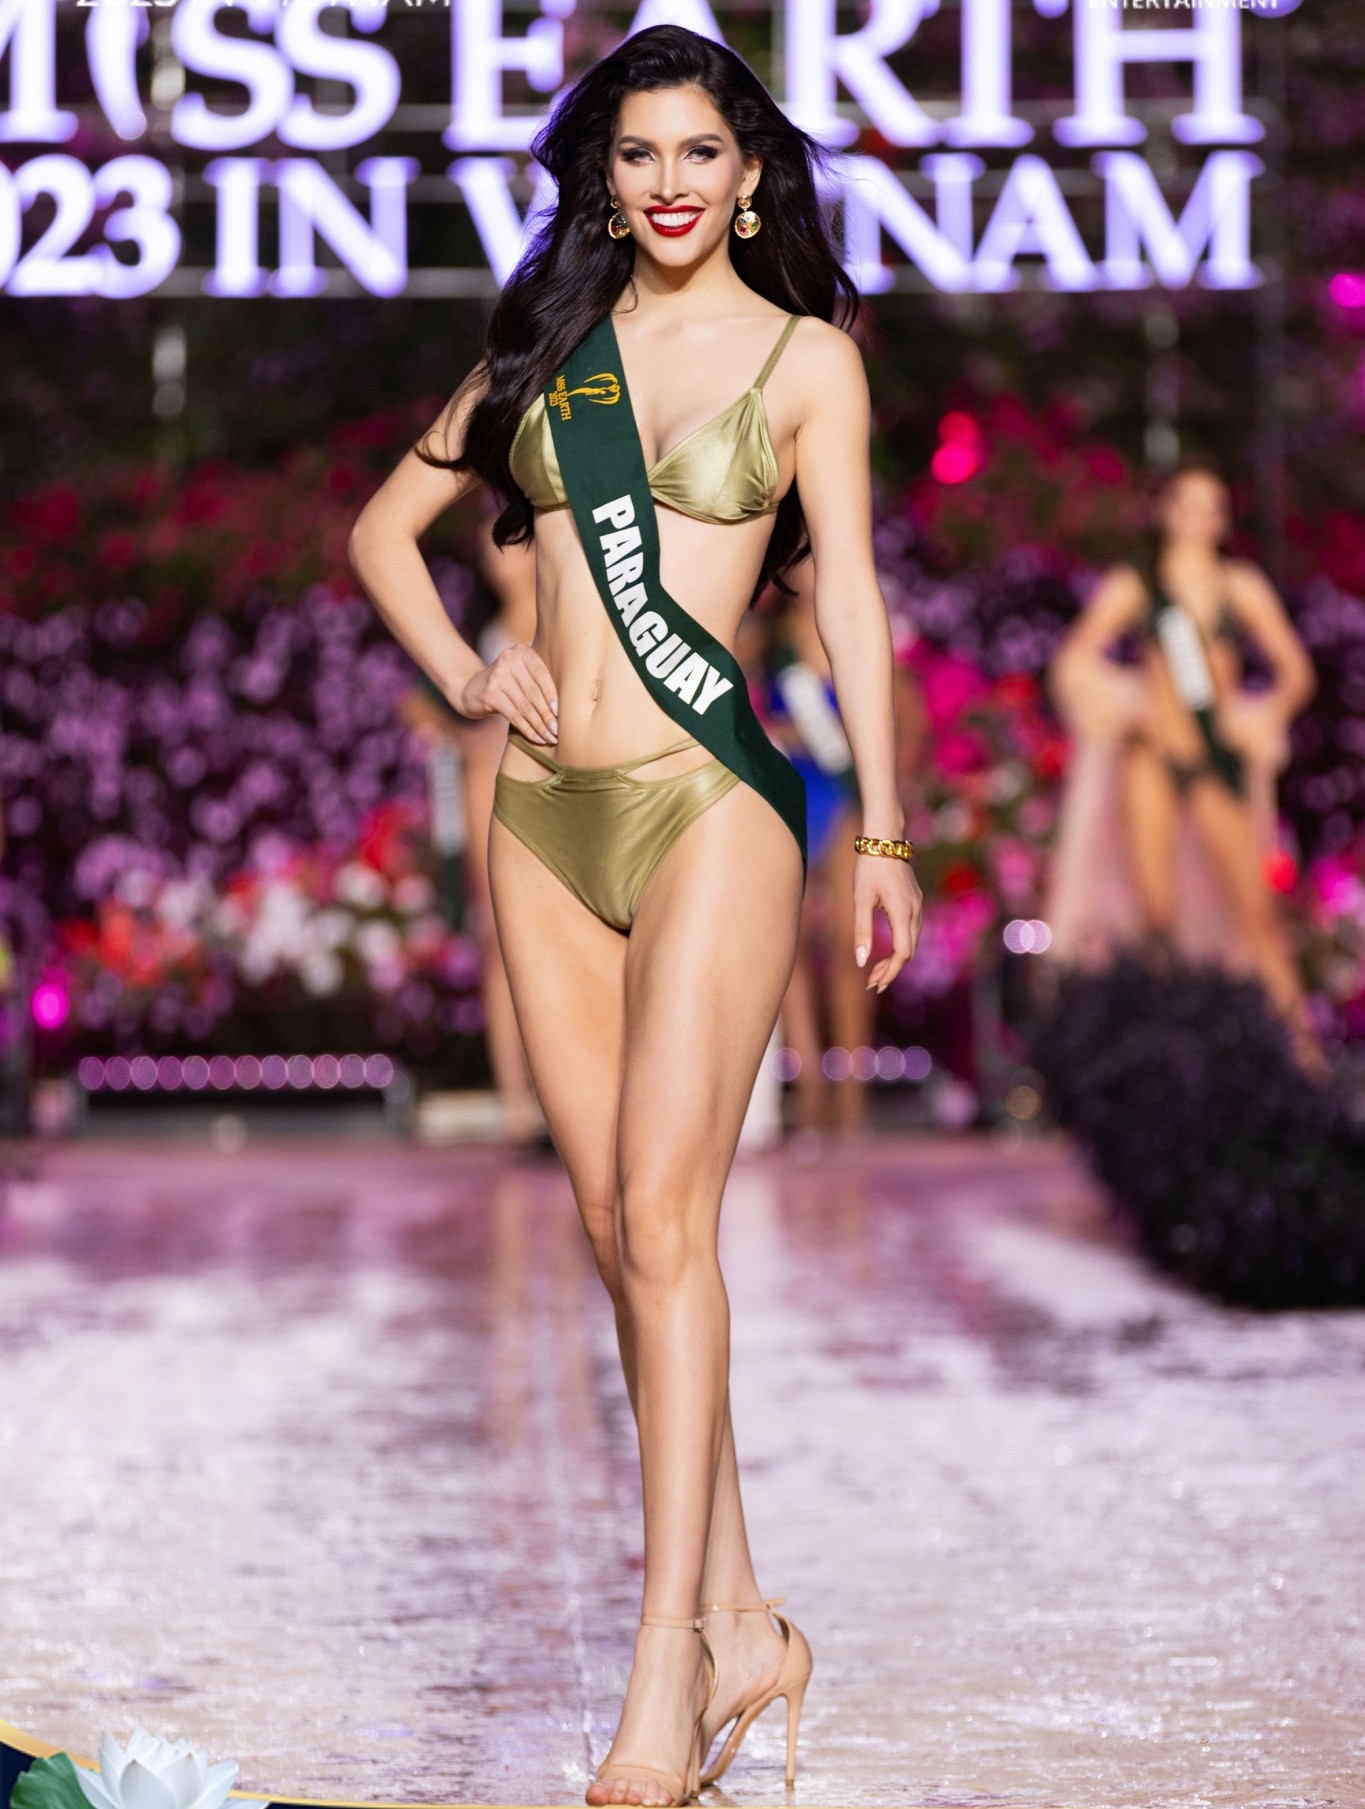 Top 8 thí sinh trình diễn bikini nổi bật nhất trước chung kết Miss Earth 2023 - Ảnh 11.